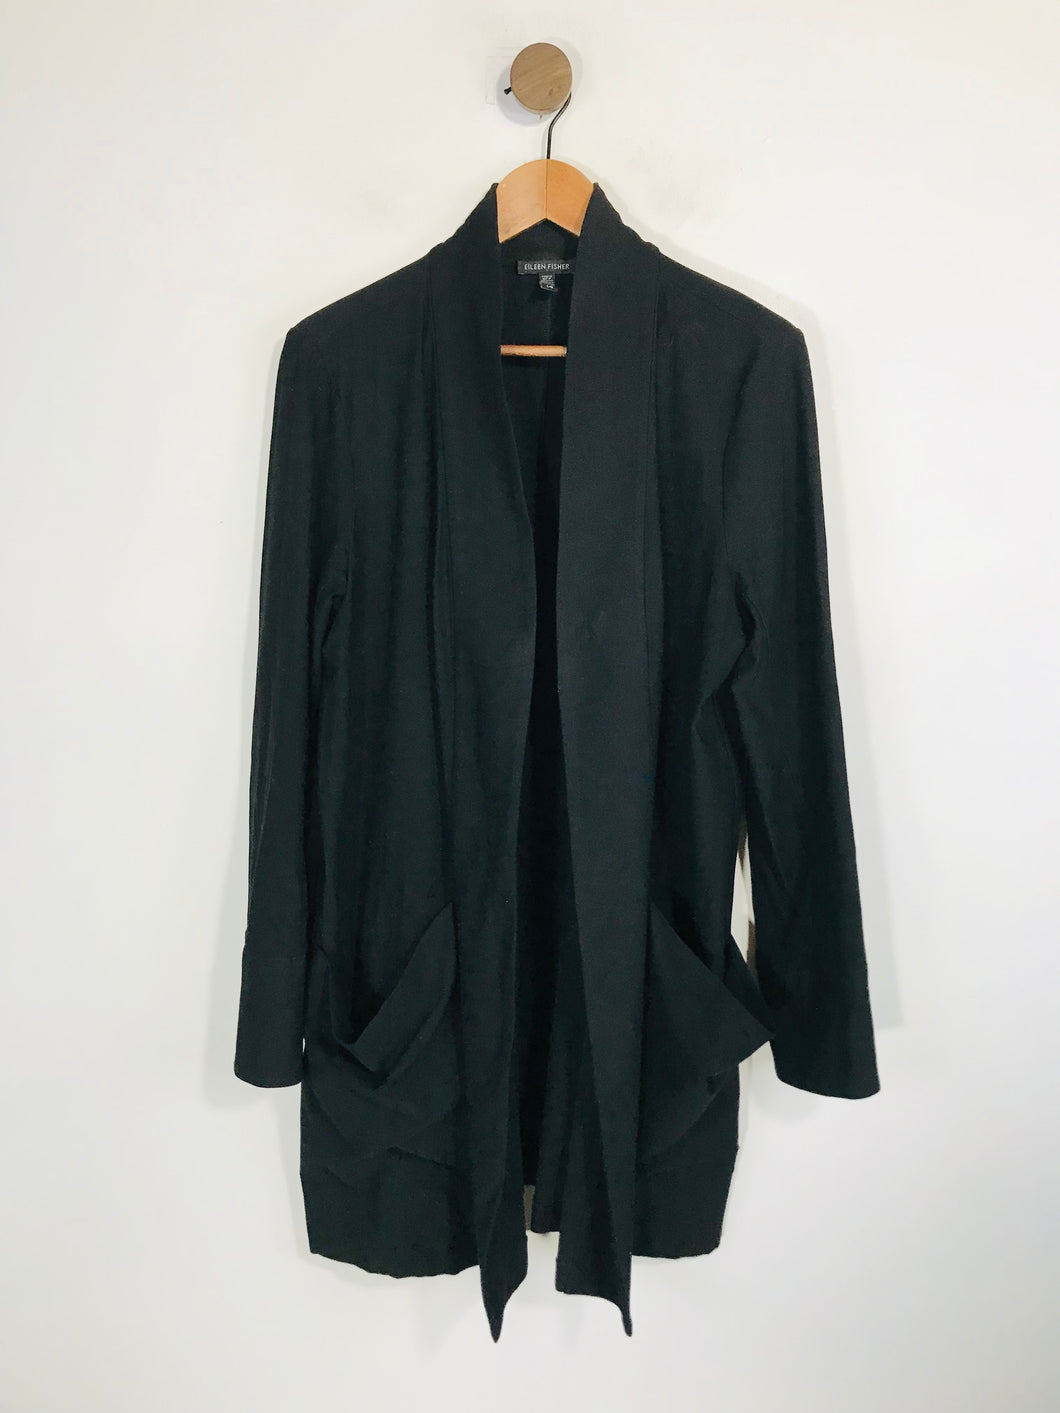 Eileen Fisher Women's Long Stretch Blazer Jacket | L UK14 | Black